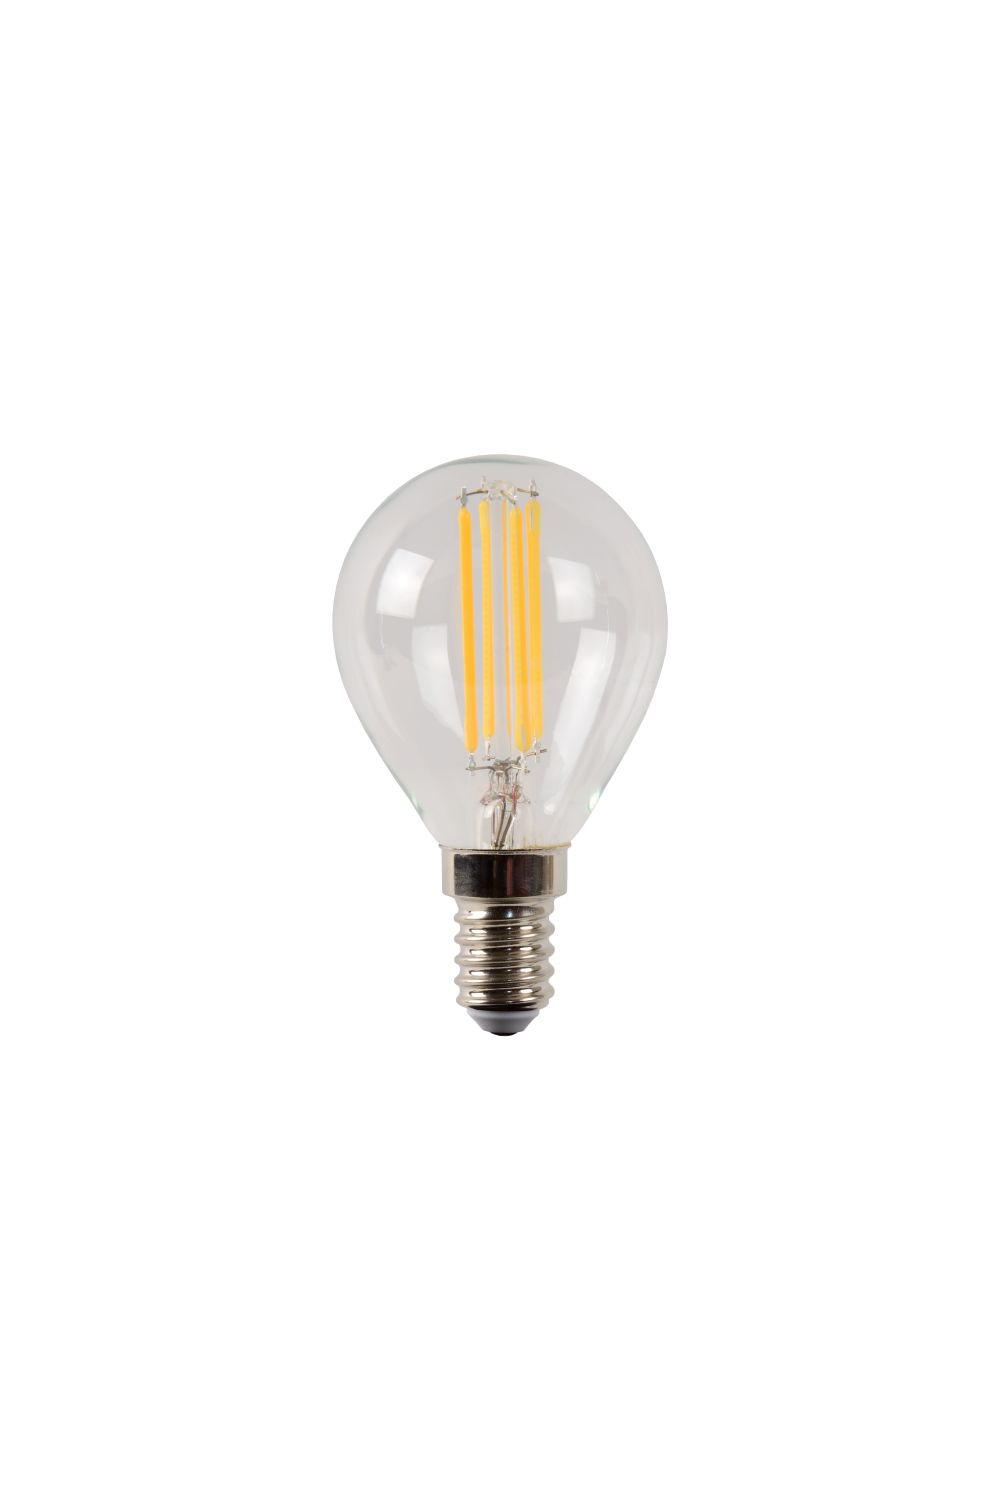 Lucide P45 - Filament lamp - Ø 4,5 cm - LED Dimb. - E14 - 1x4W 2700K - Transparant